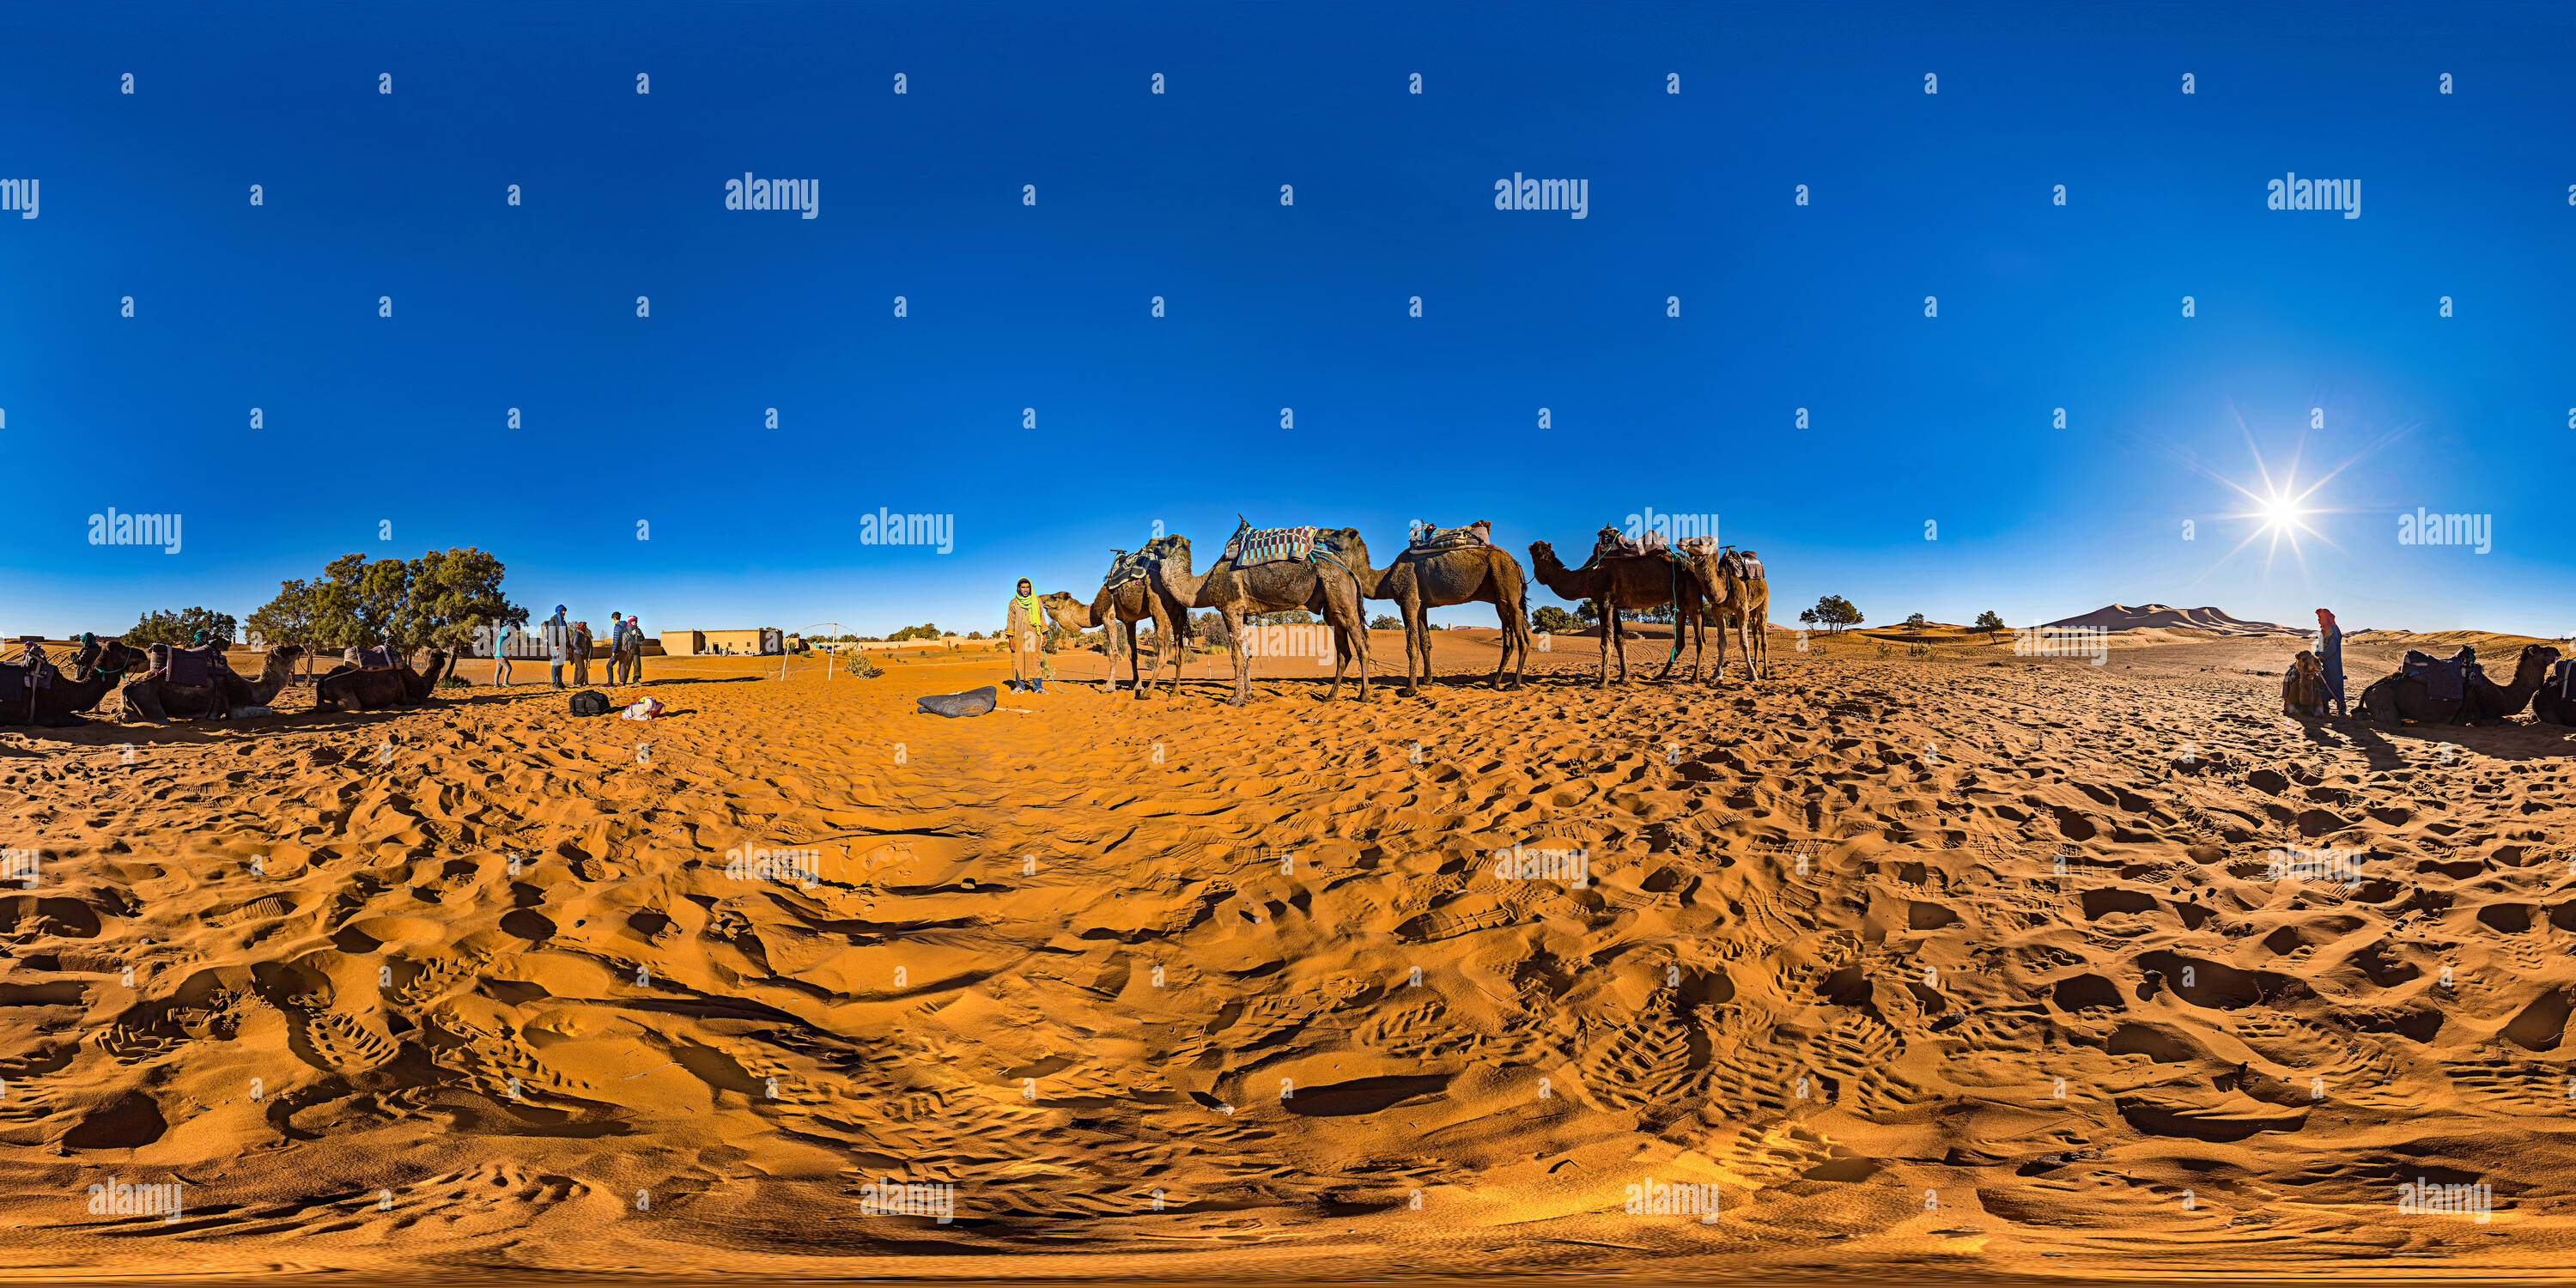 Vue panoramique à 360° de Des dromadaires dans le désert